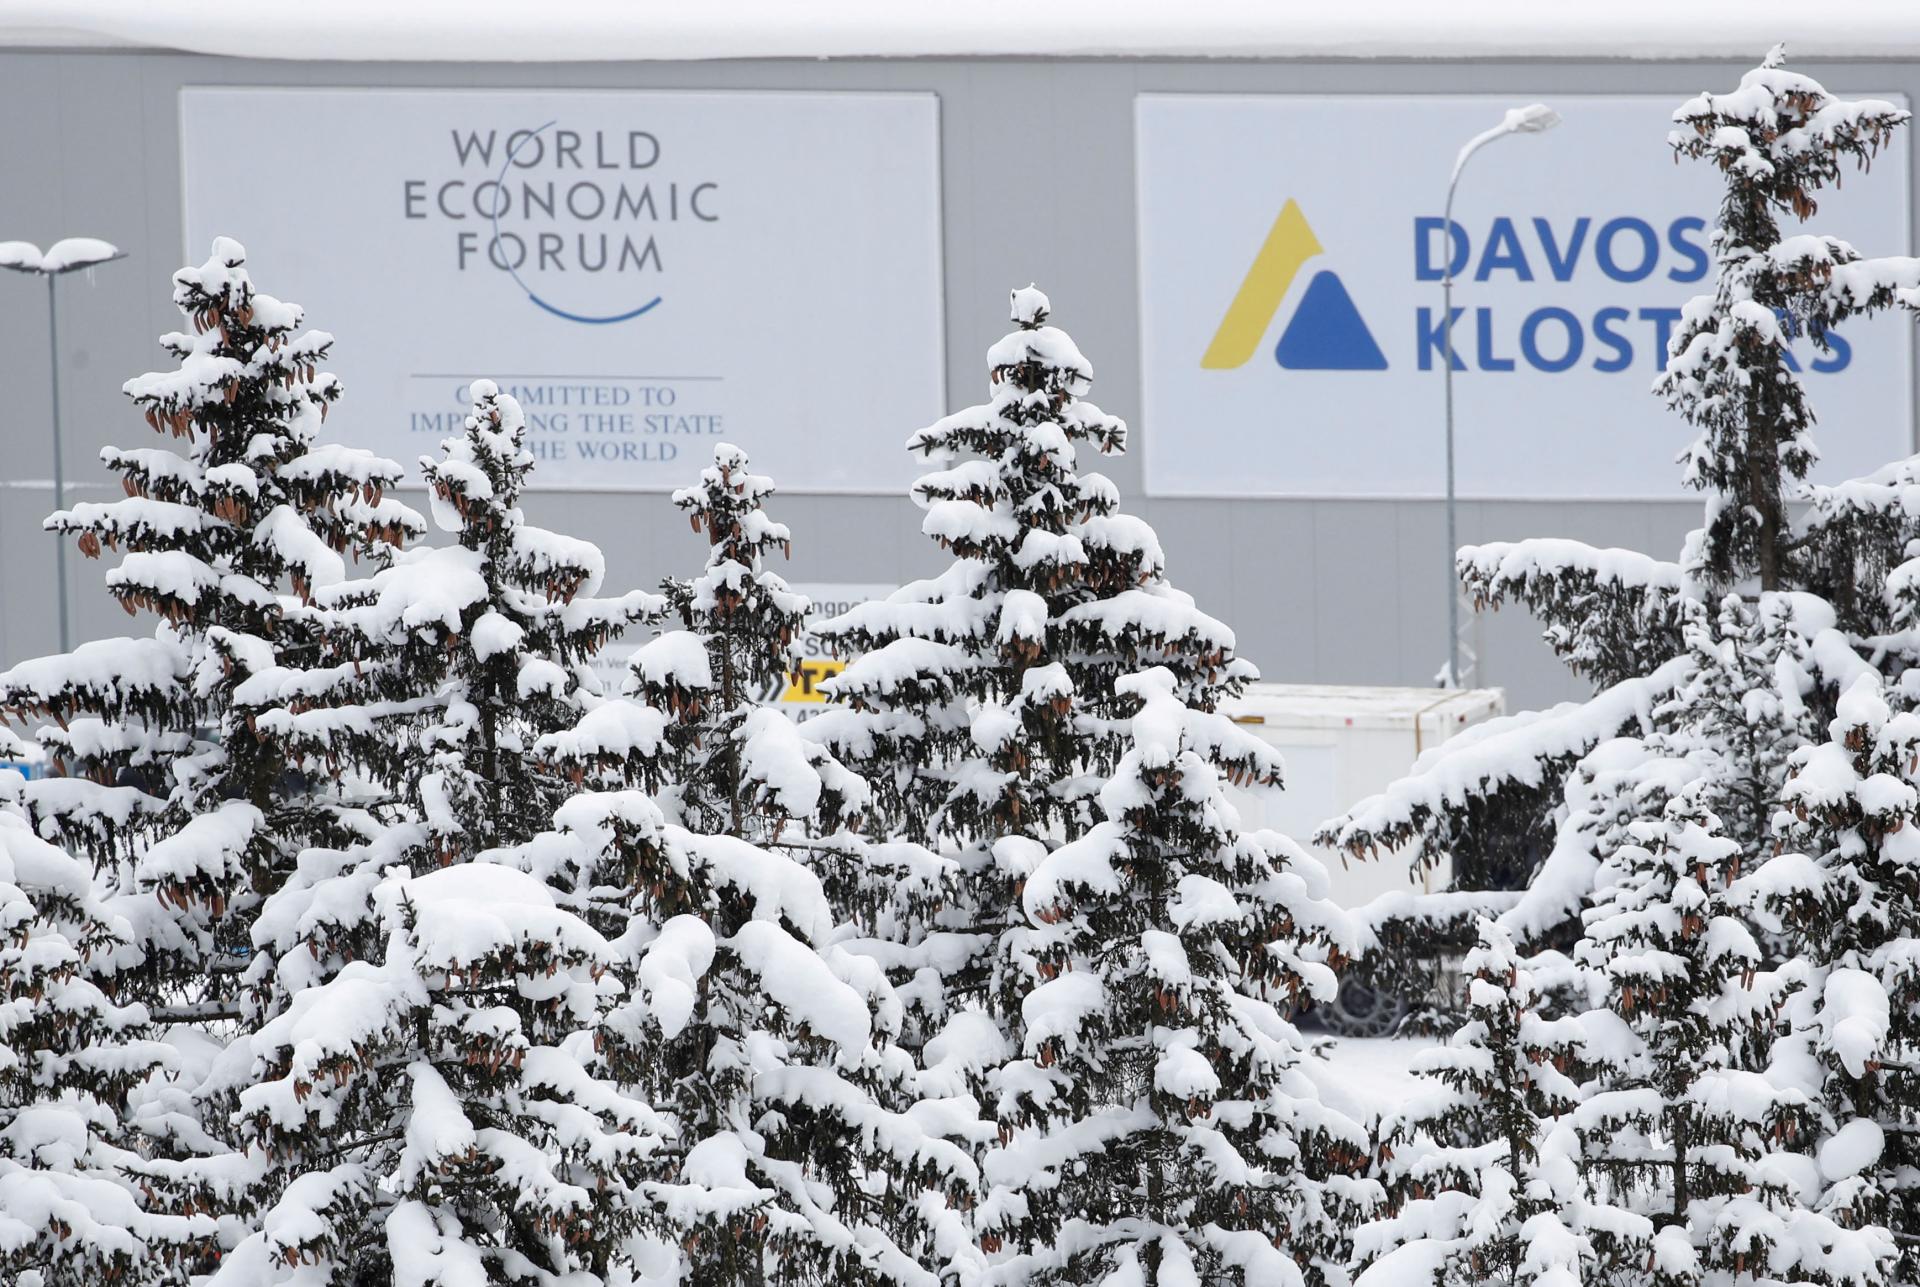 Davos oçraşuı qabat kiçekterelde